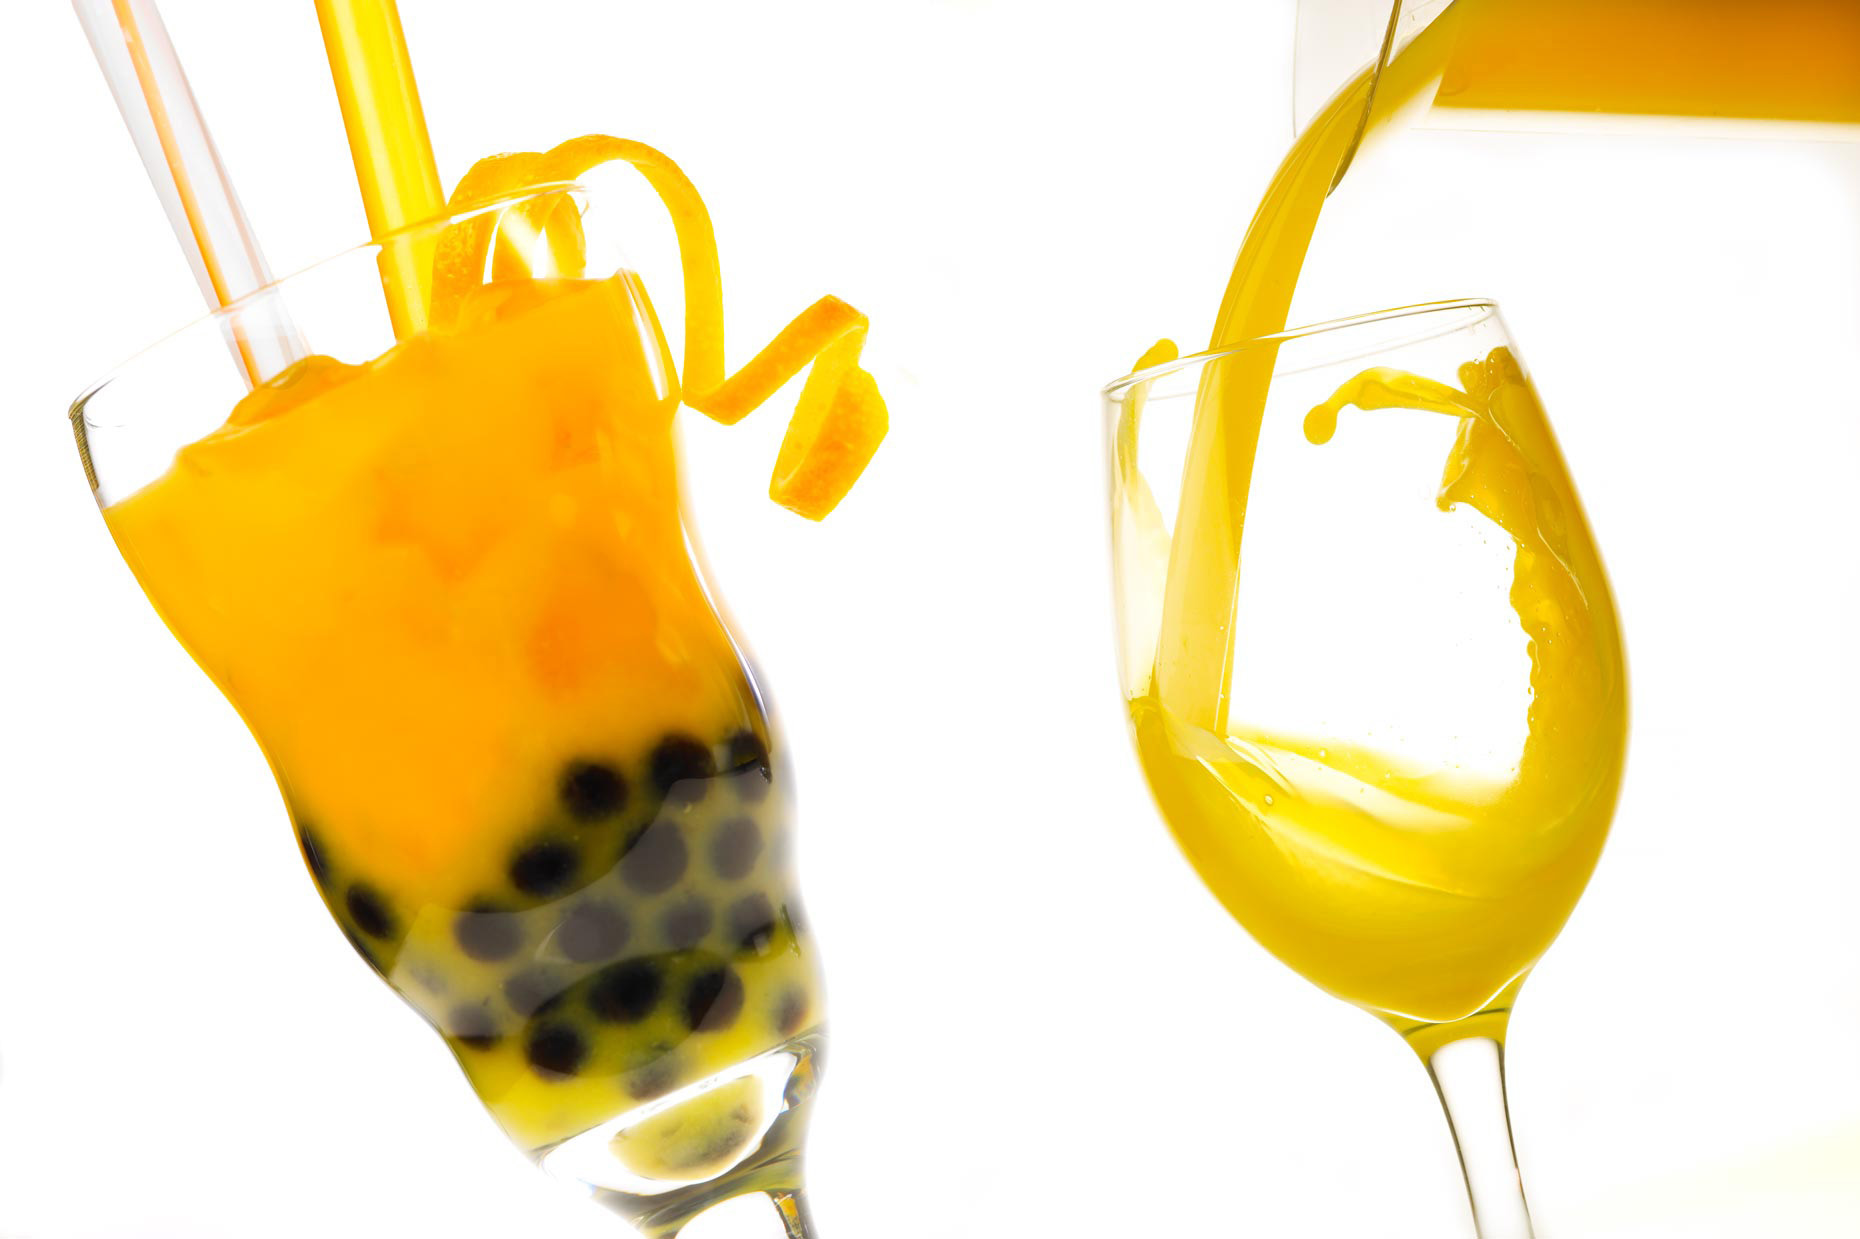  Beverage Photography | Bubble Tea & Orange Juice Pour